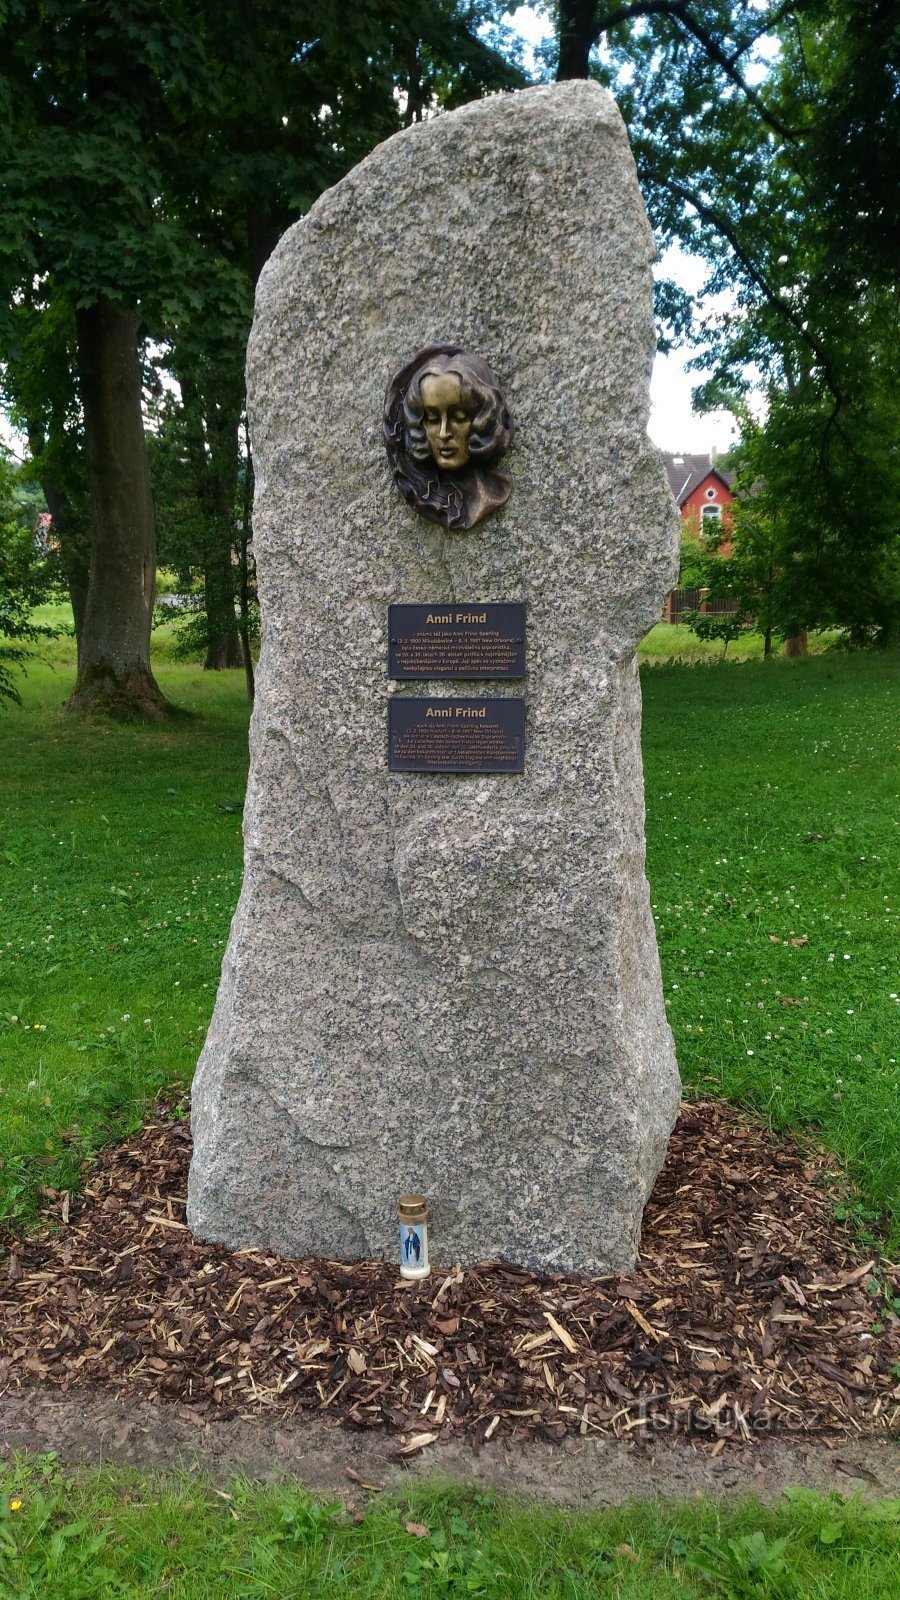 Pomník Anni Frind v Mikulášovicích.